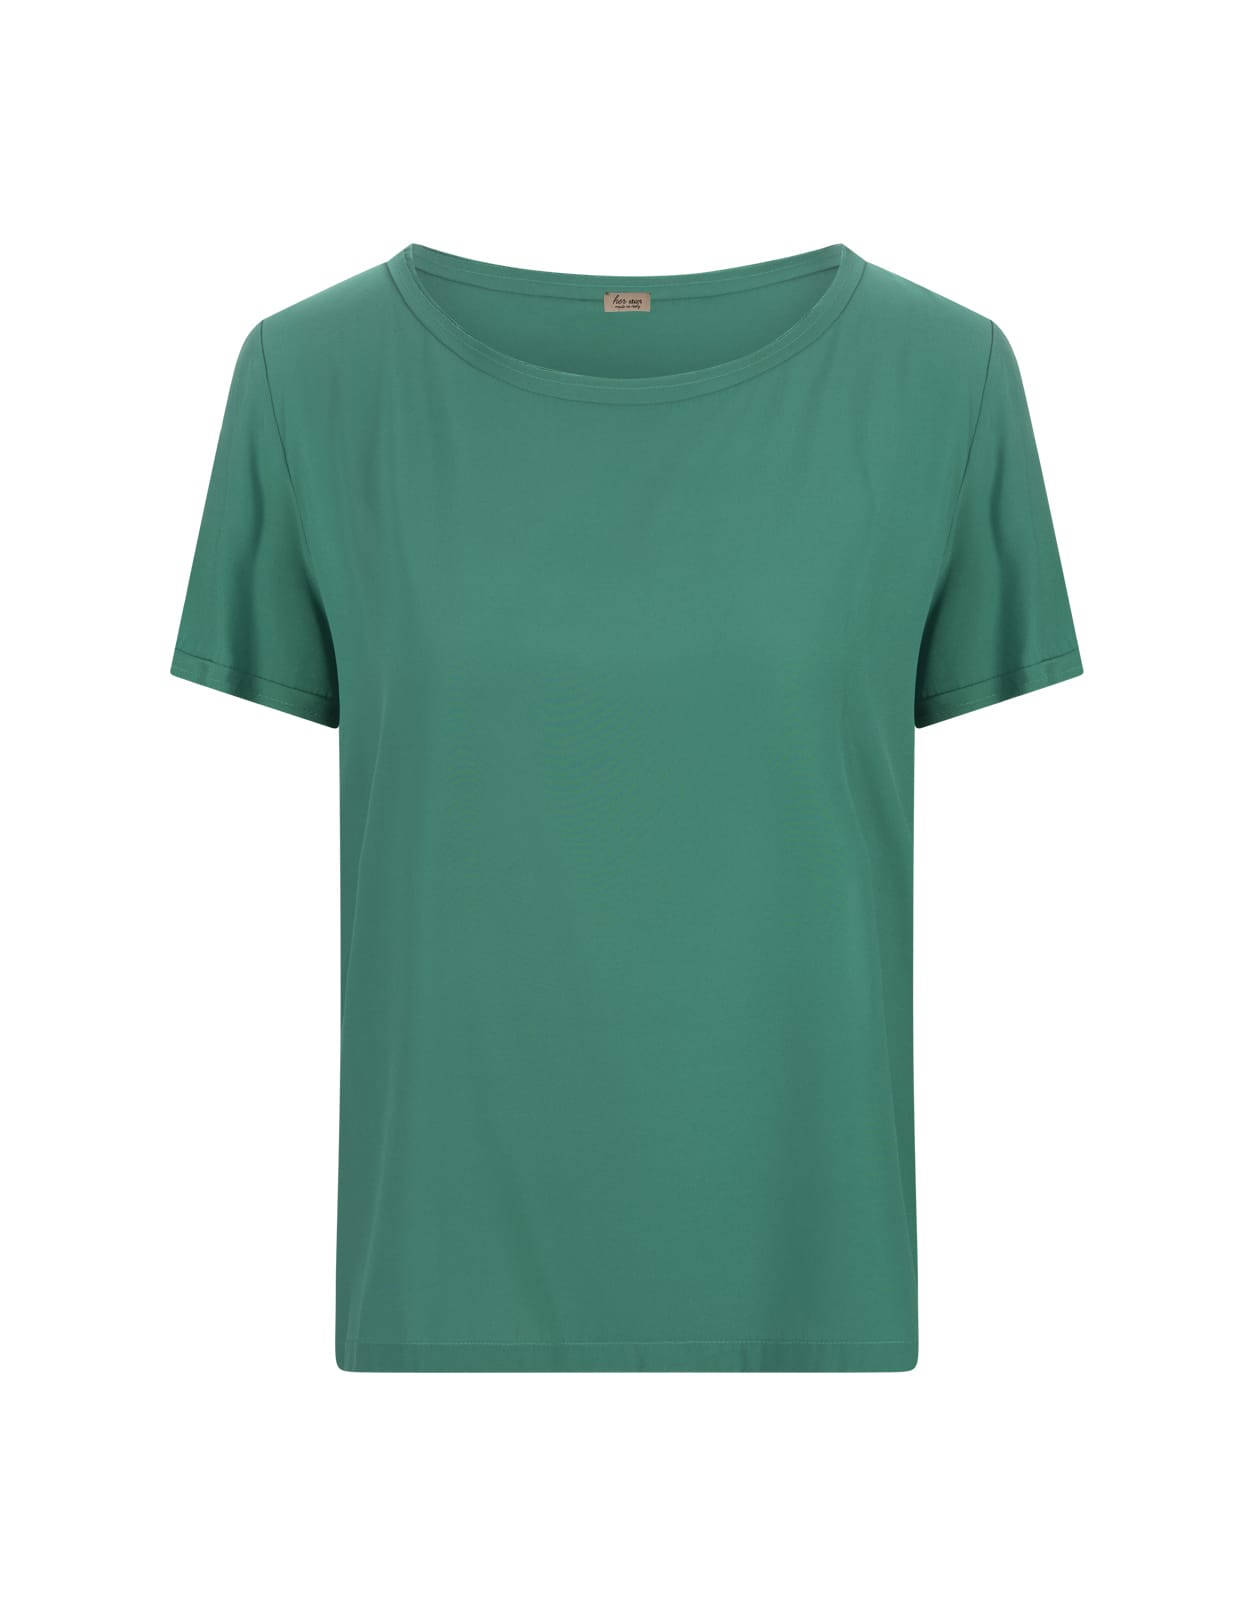 Her Shirt Green Opaque Silk T-shirt